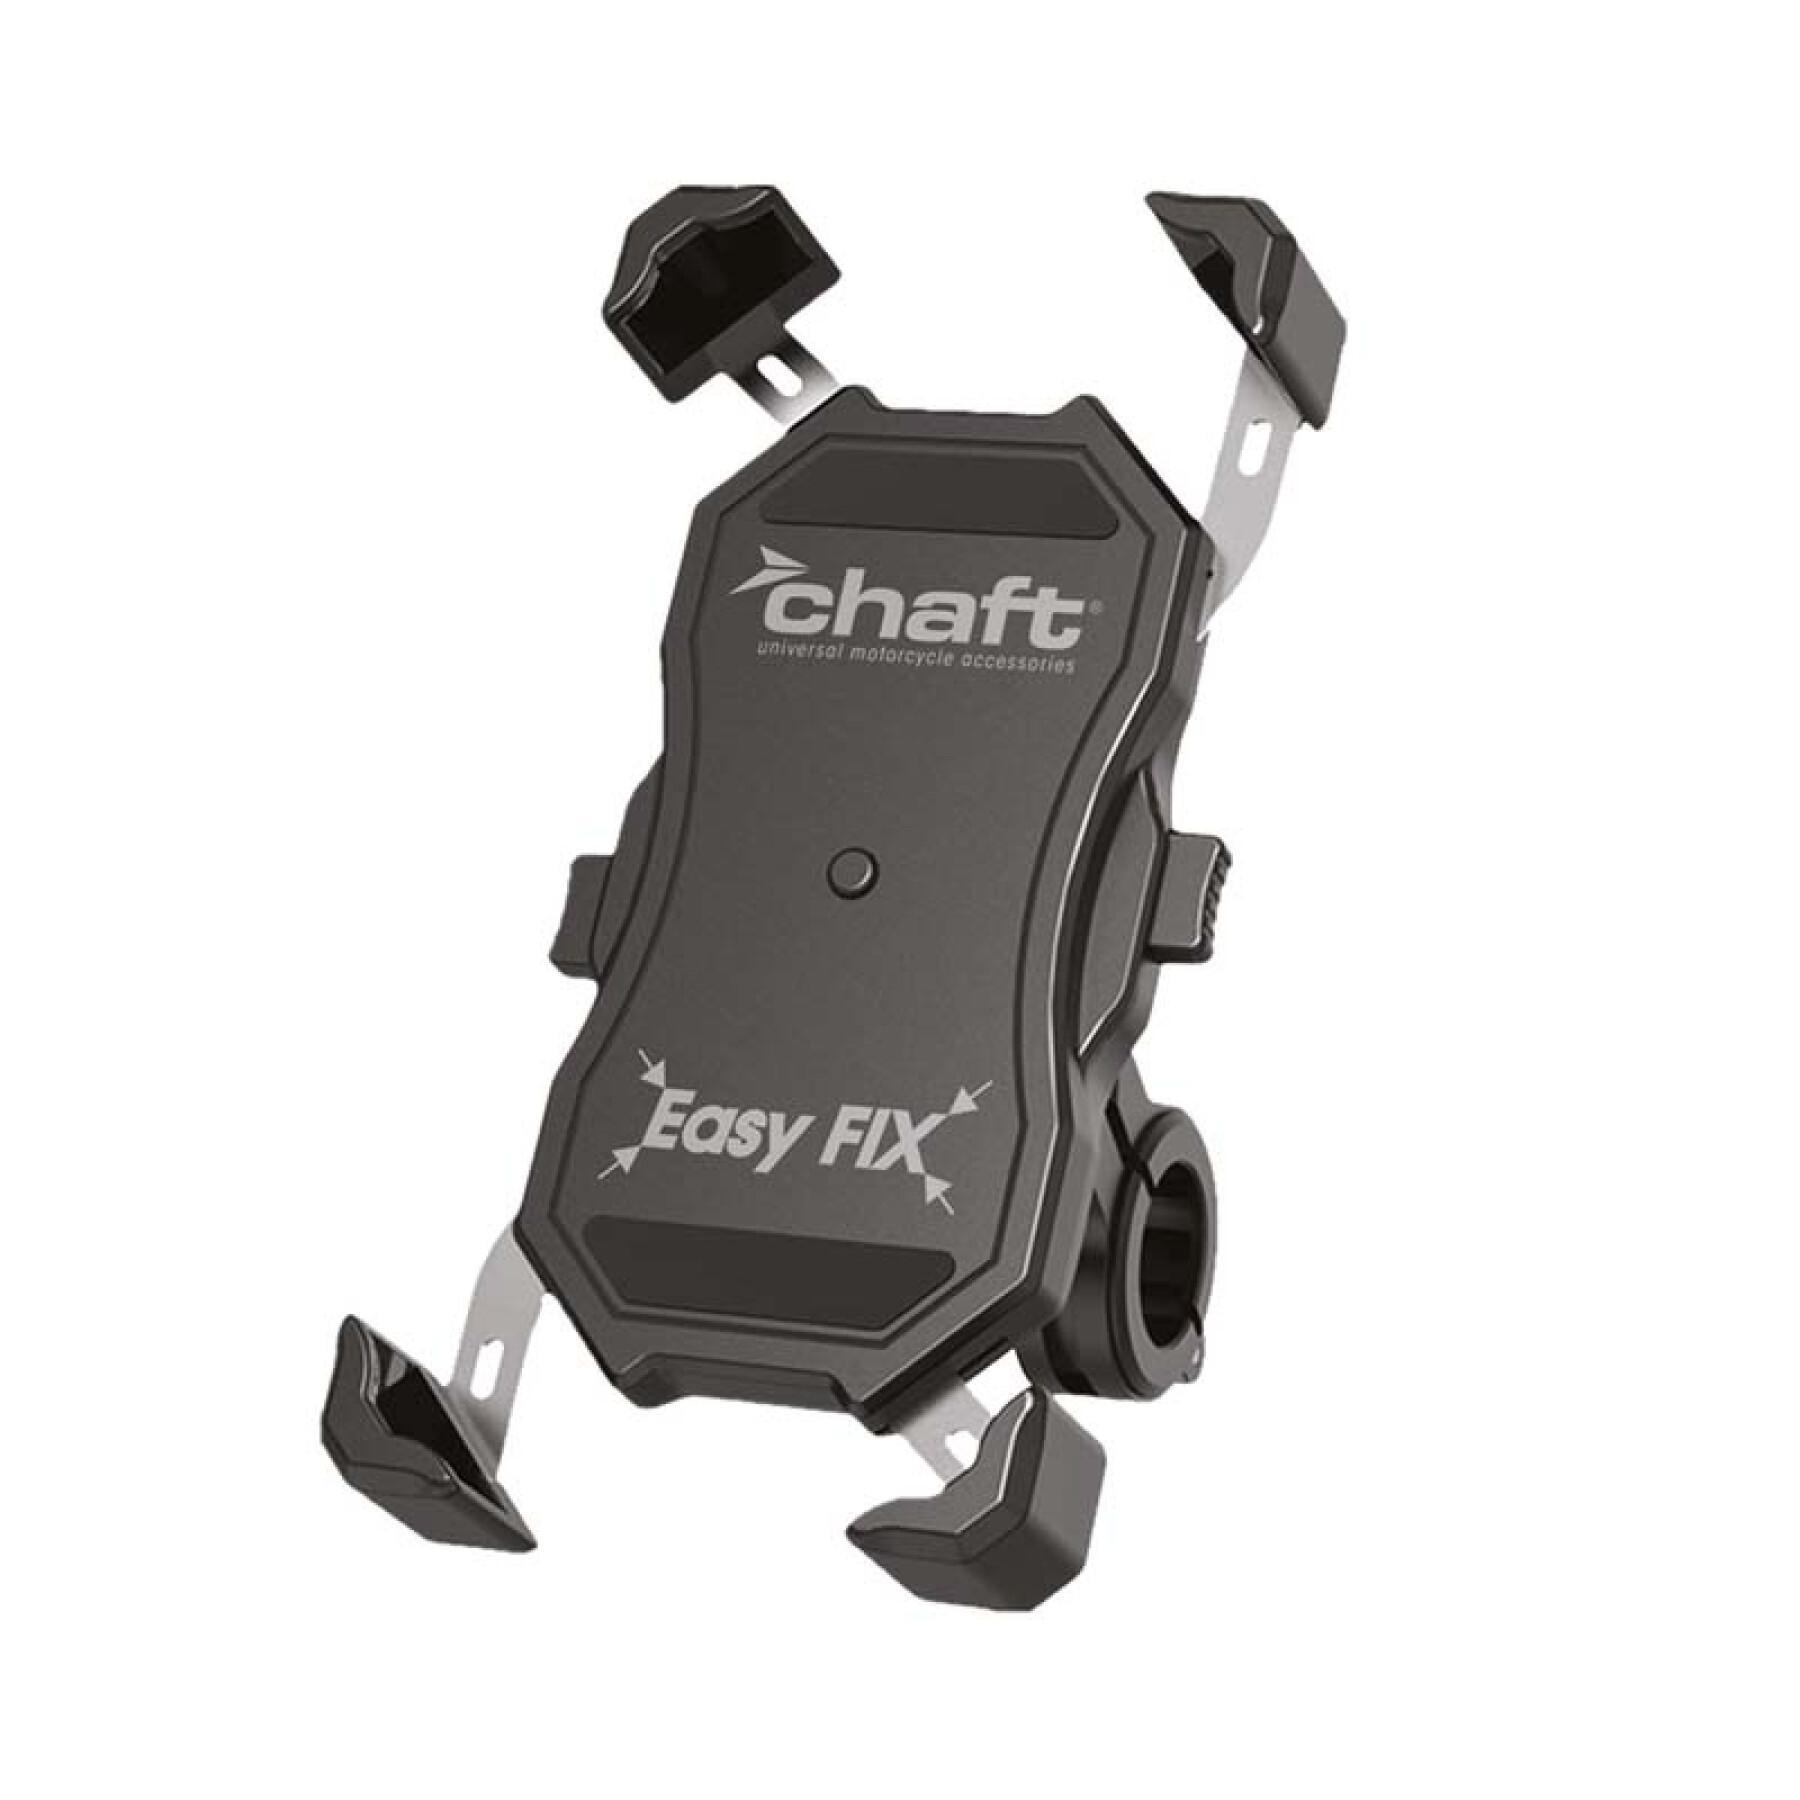 Porta smartphone da moto Chaft Easyfix